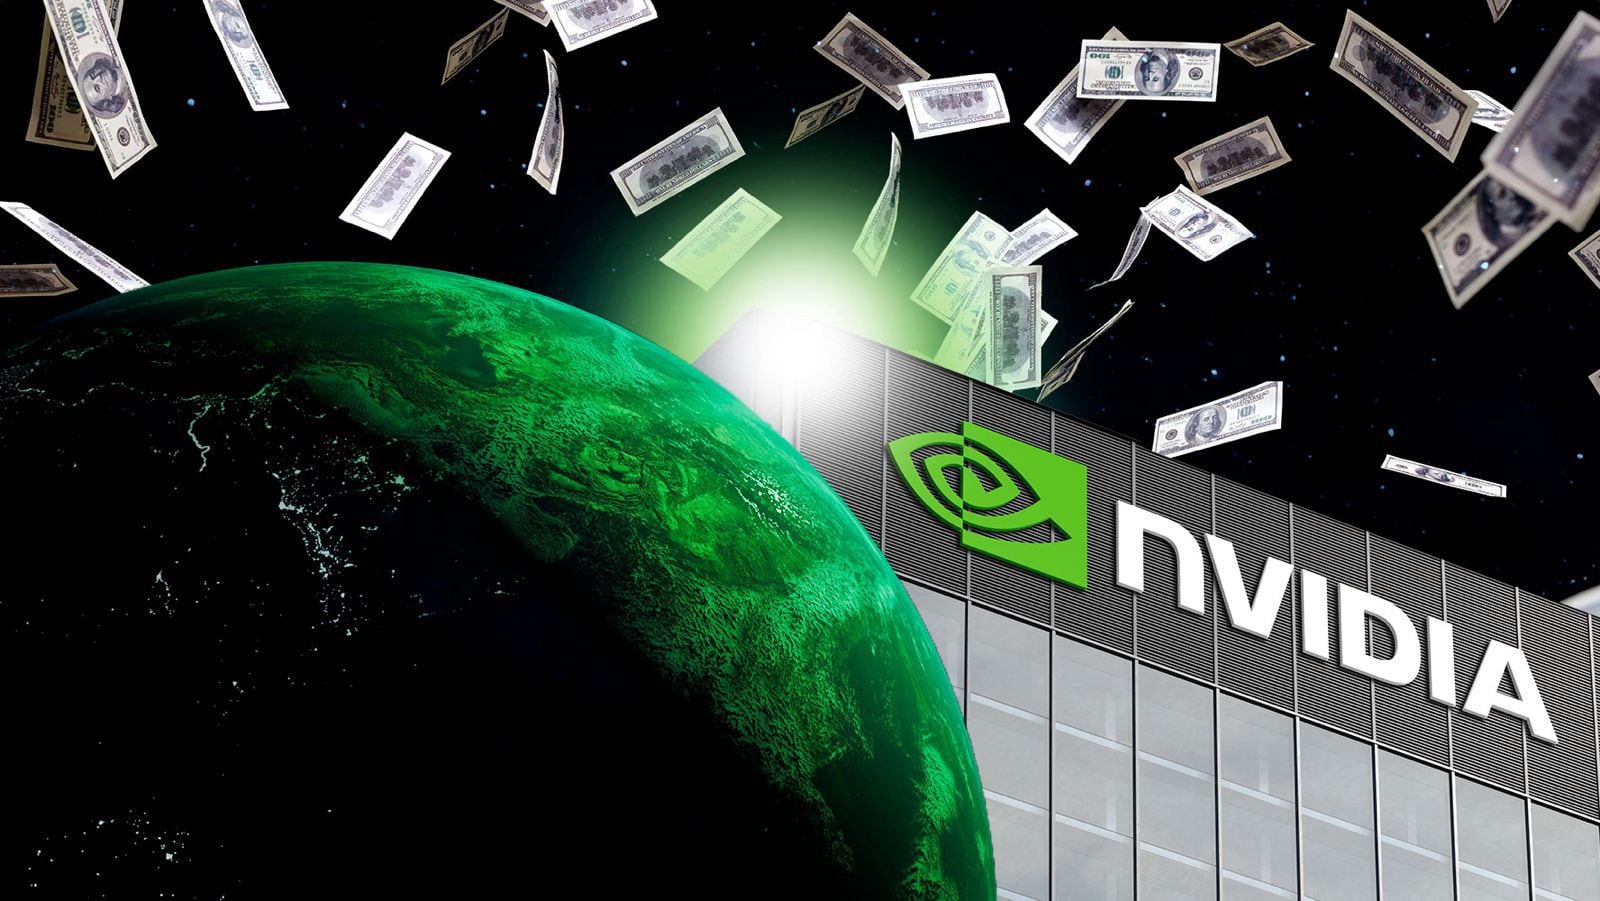 ‘¿Nvidia va a ser la empresa más valiosa del mundo?’